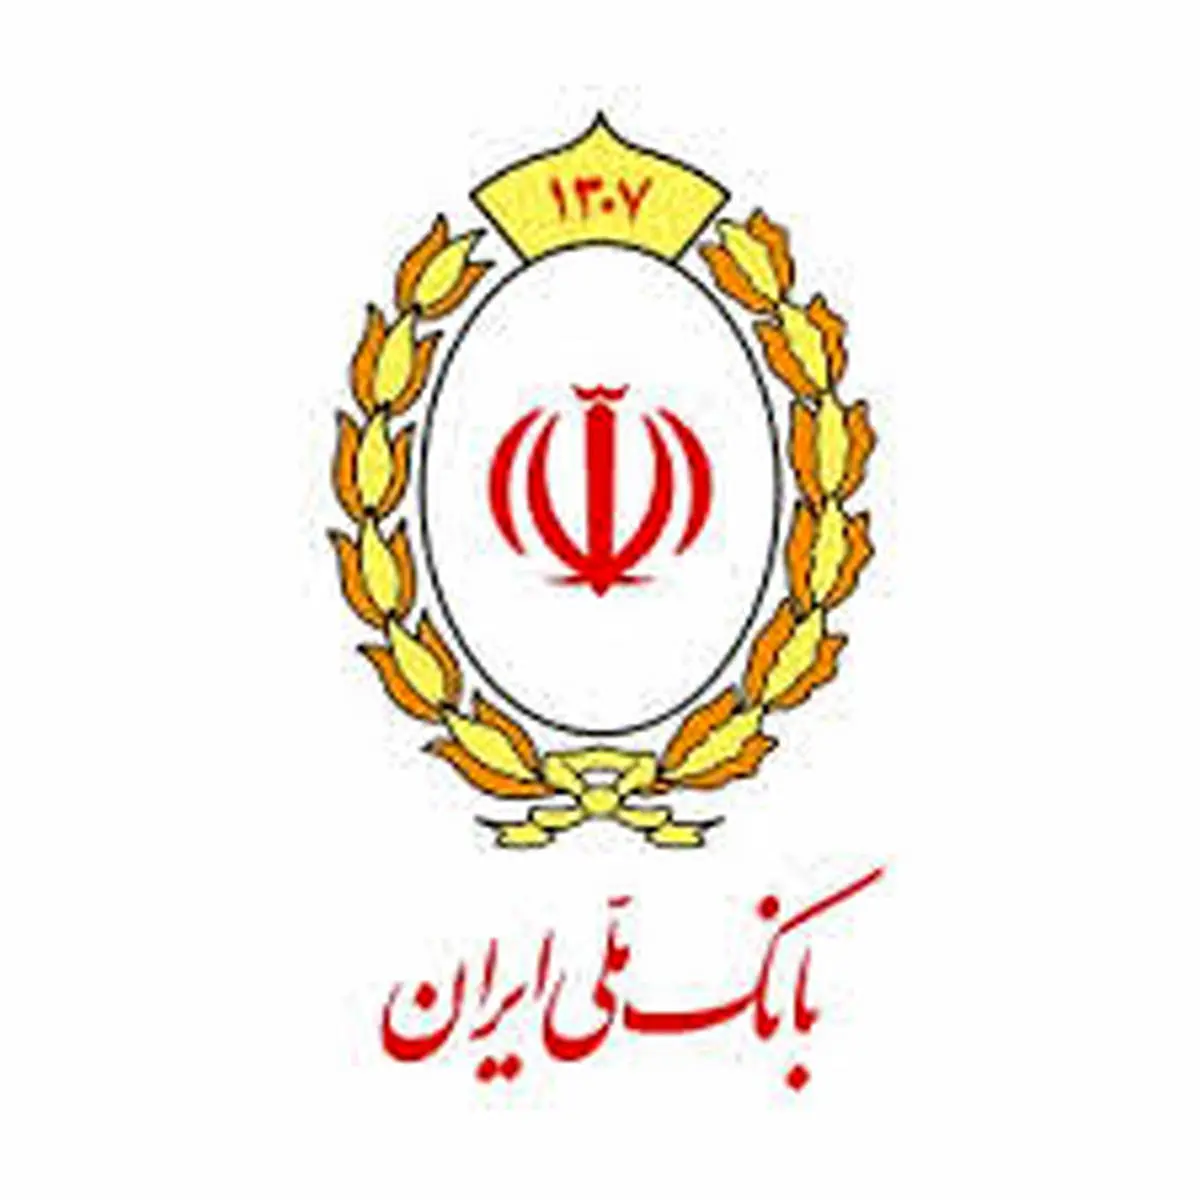 بانک ملی ایران همراه و حامی شرکت مرداس/ رشد دو برابری اشتغالزایی در شرکت مرداس با حمایتهای بانک ملی ایران